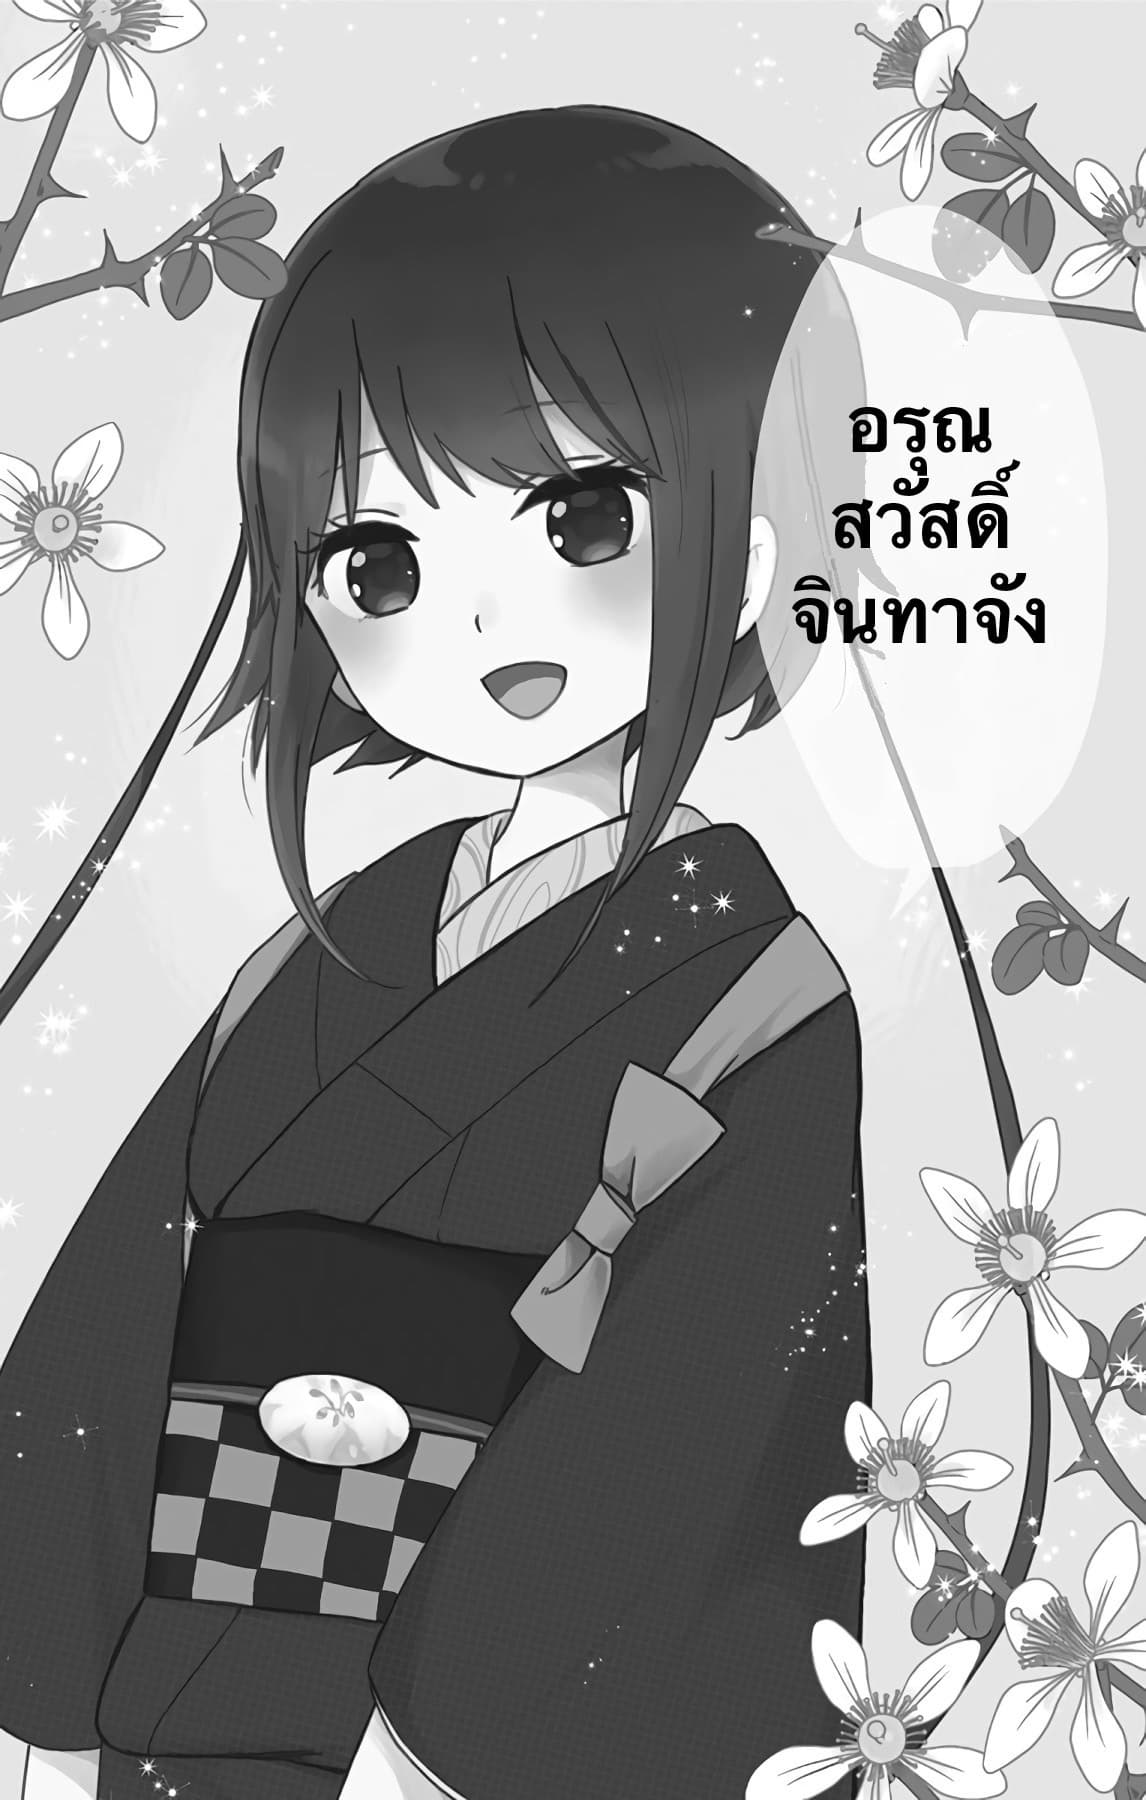 Shouwa Otome Otogibanashi เรื่องเล่าของสาวน้อย ยุคโชวะ ตอนที่ 14 (19)